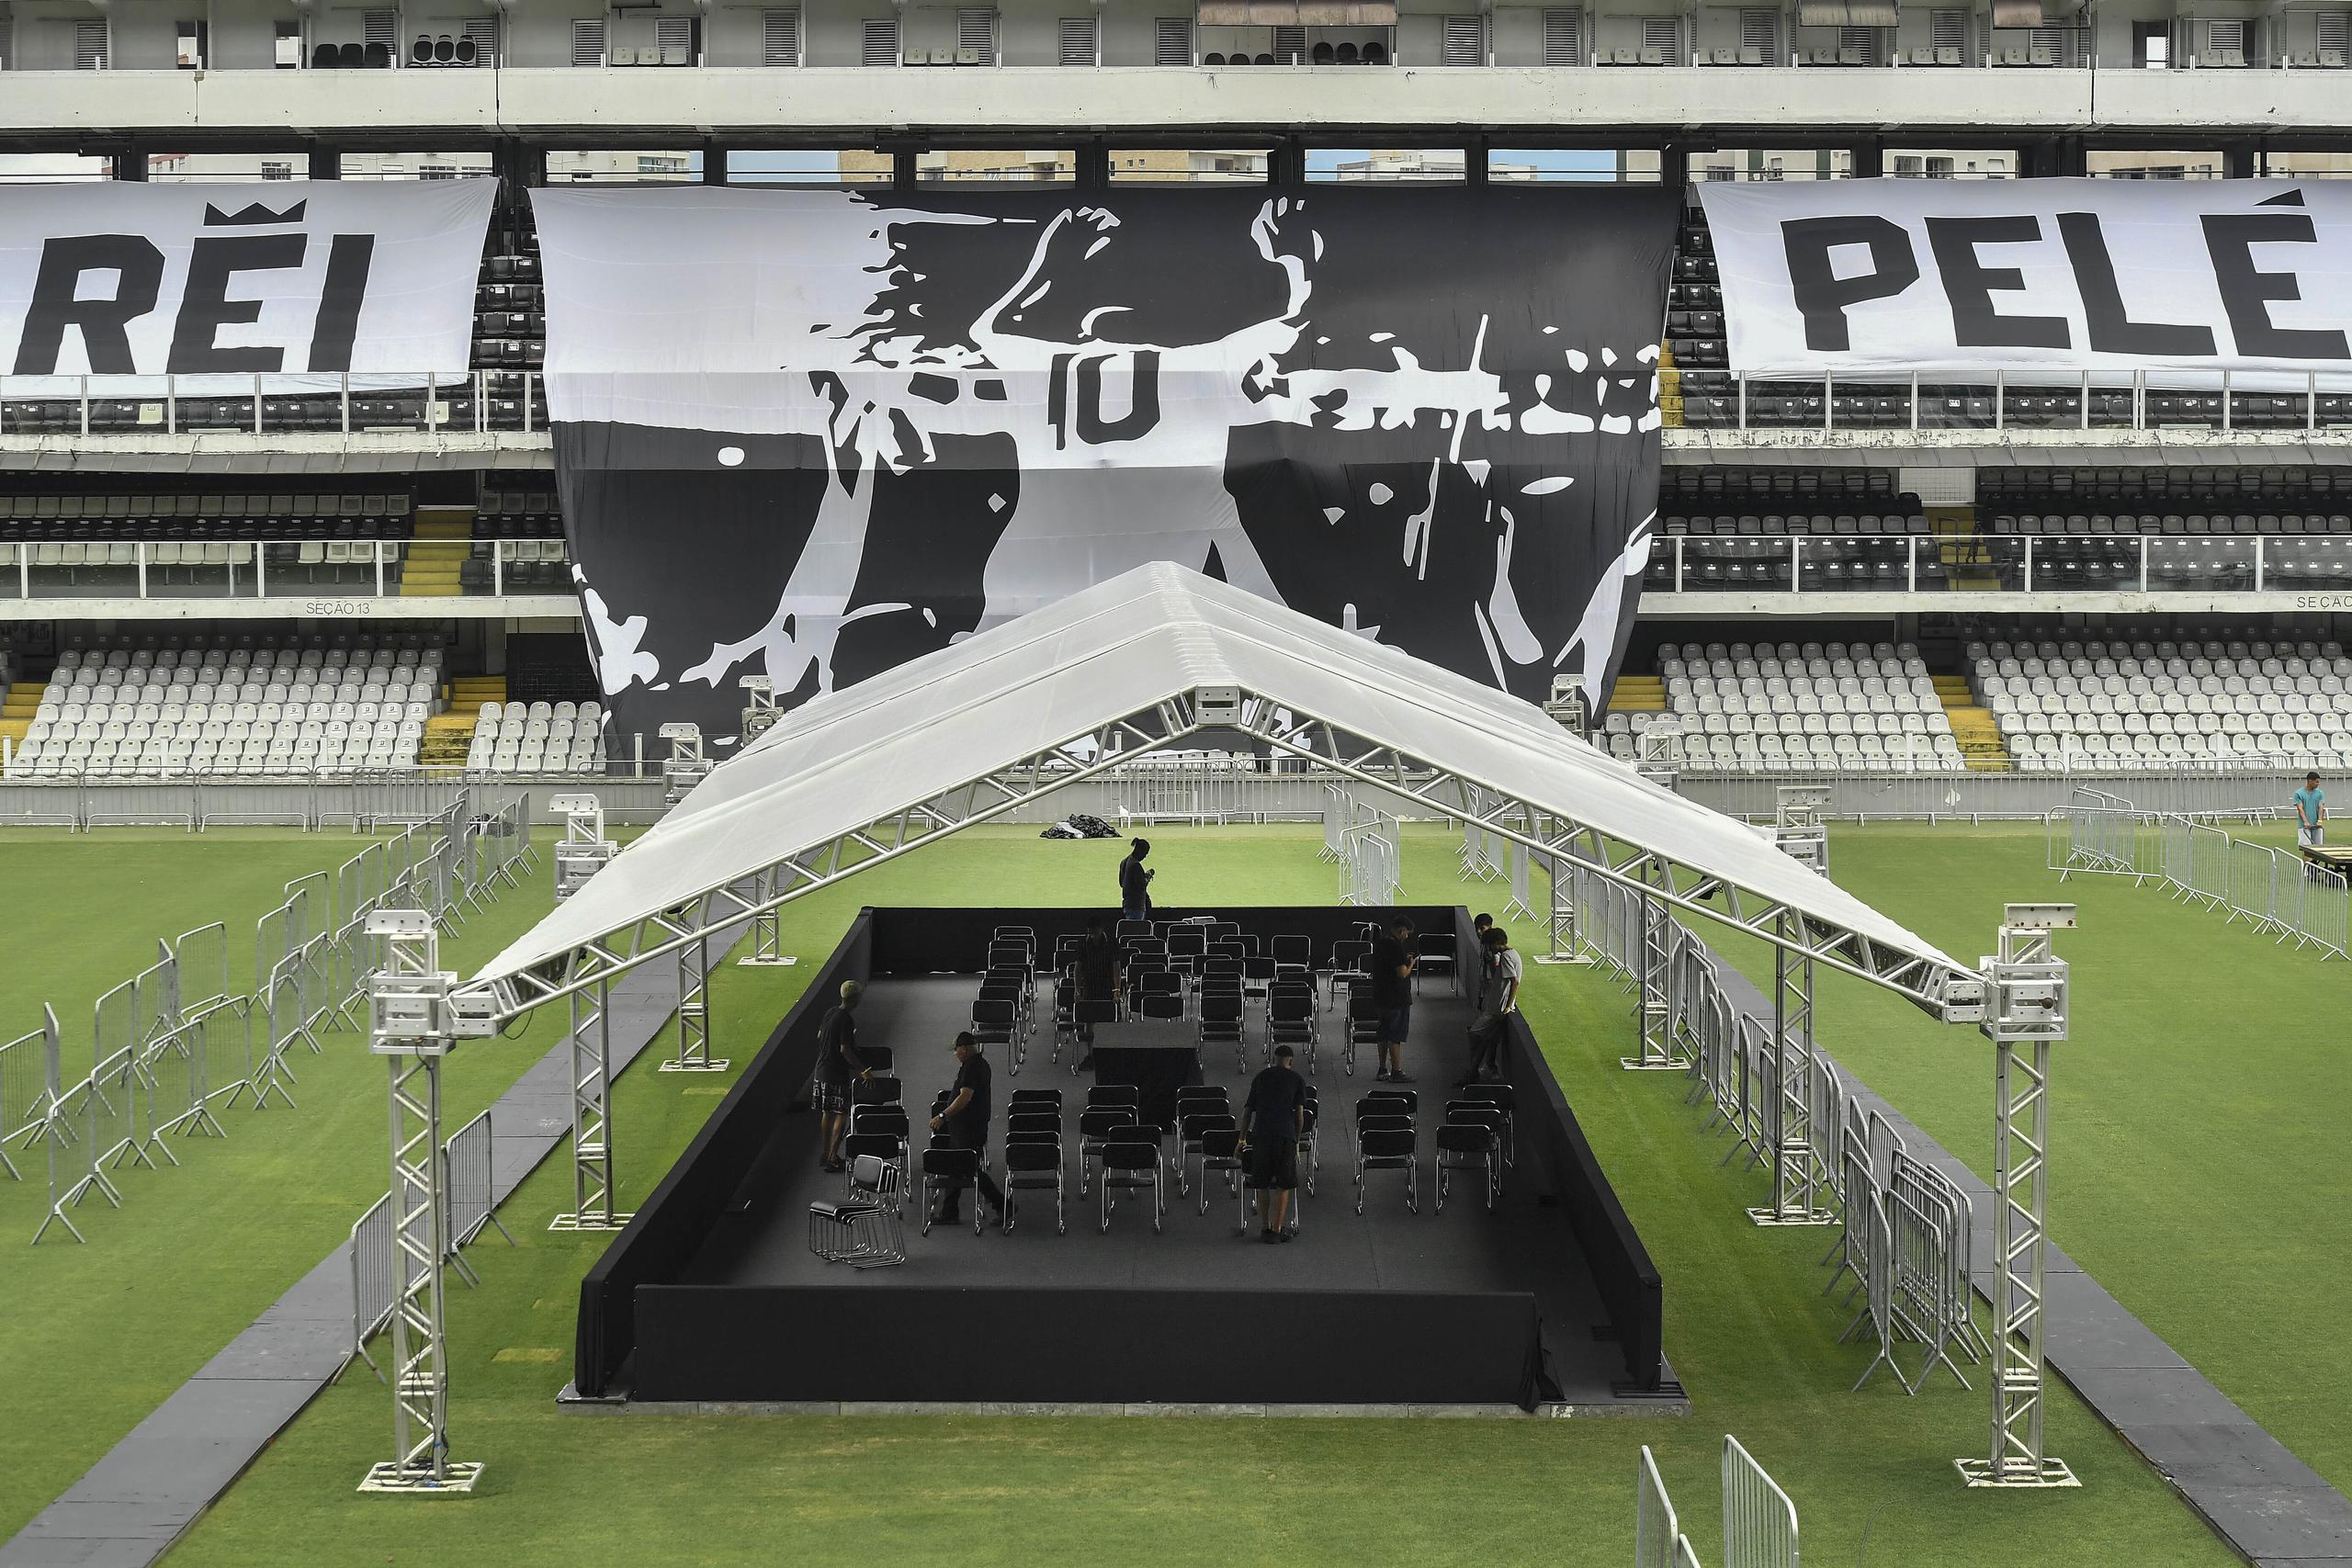 El velatorio de Pelé, el lunes y martes, será en el estadio Vila Belmiro este lunes y martes.